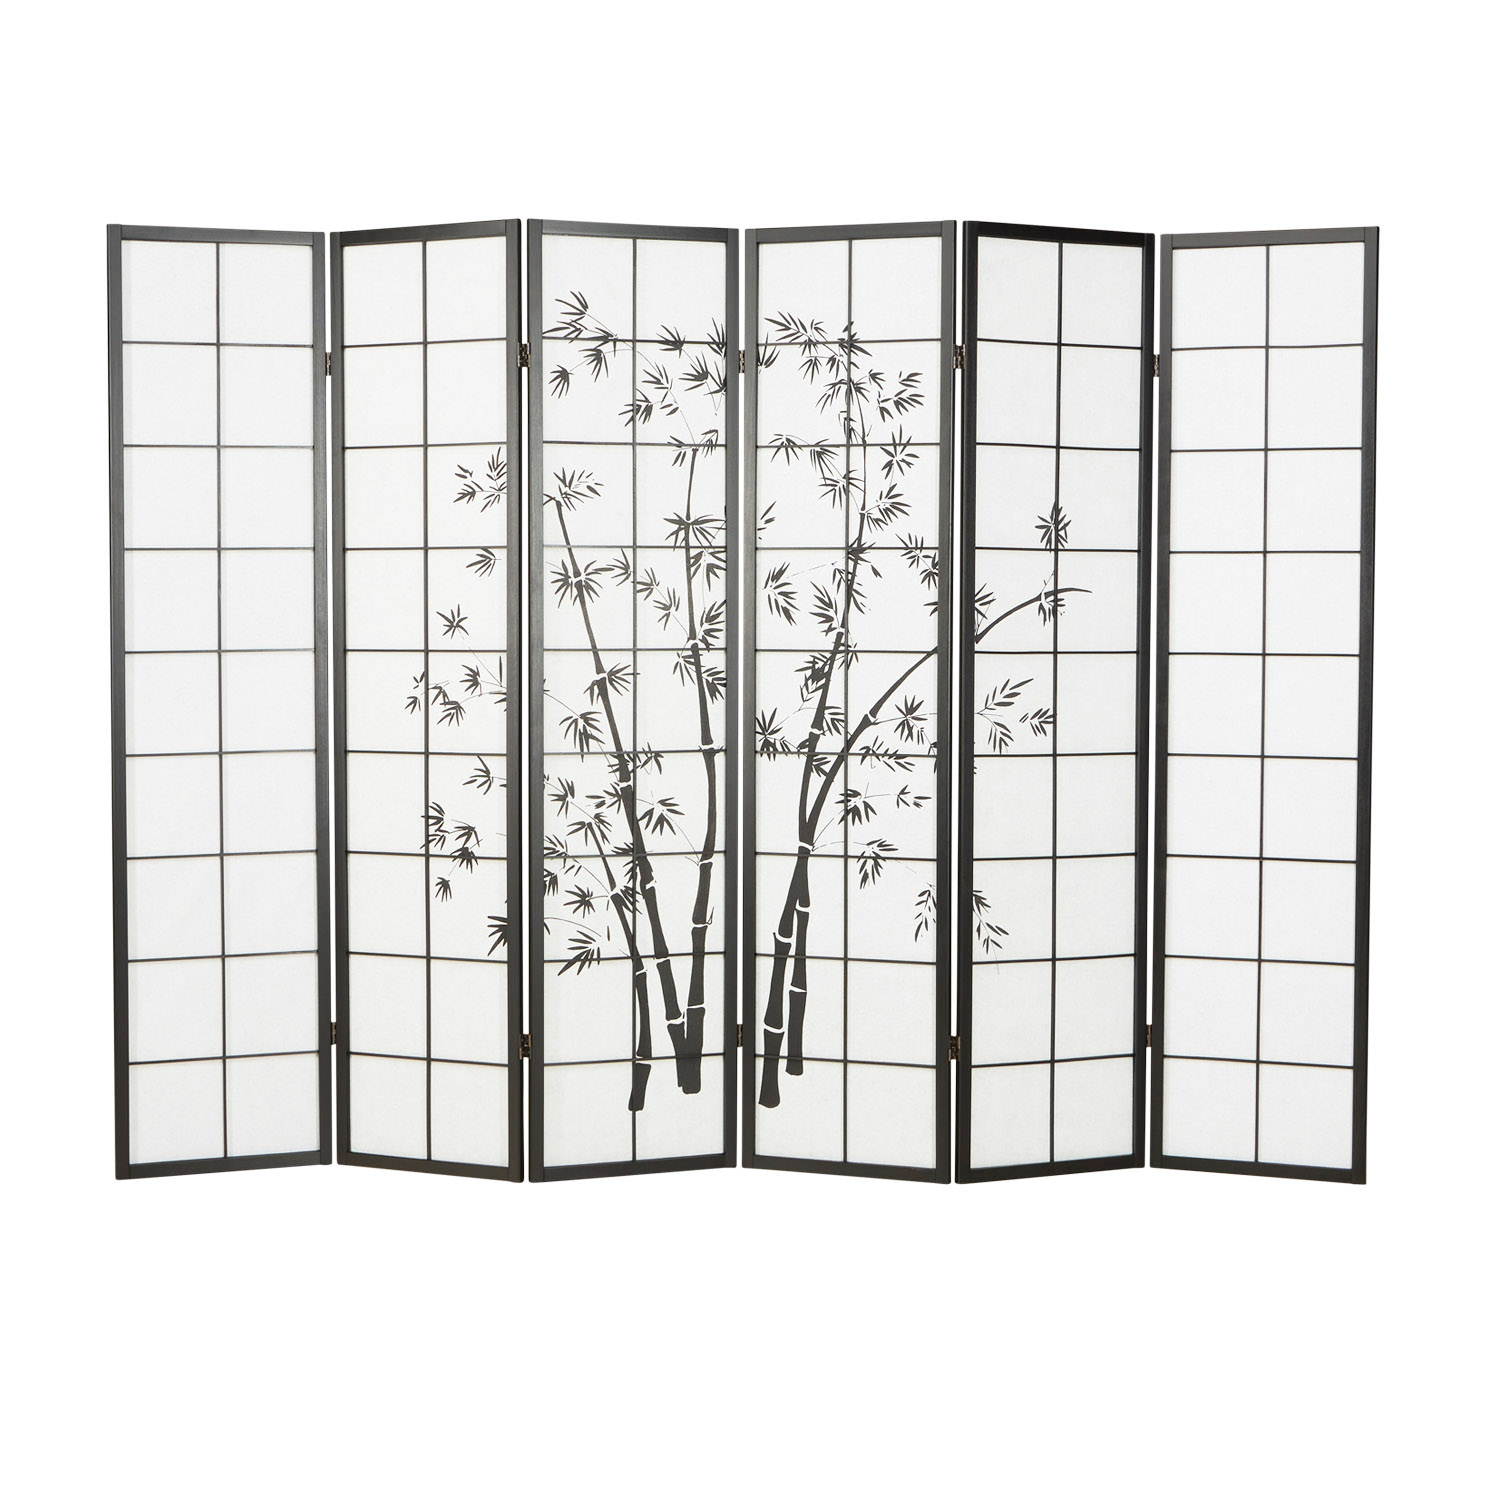 Paravent Raumteiler 6 teilig, Holz Schwarz, Reispapier Weiß, Bambusmuster, Höhe 179 cm	